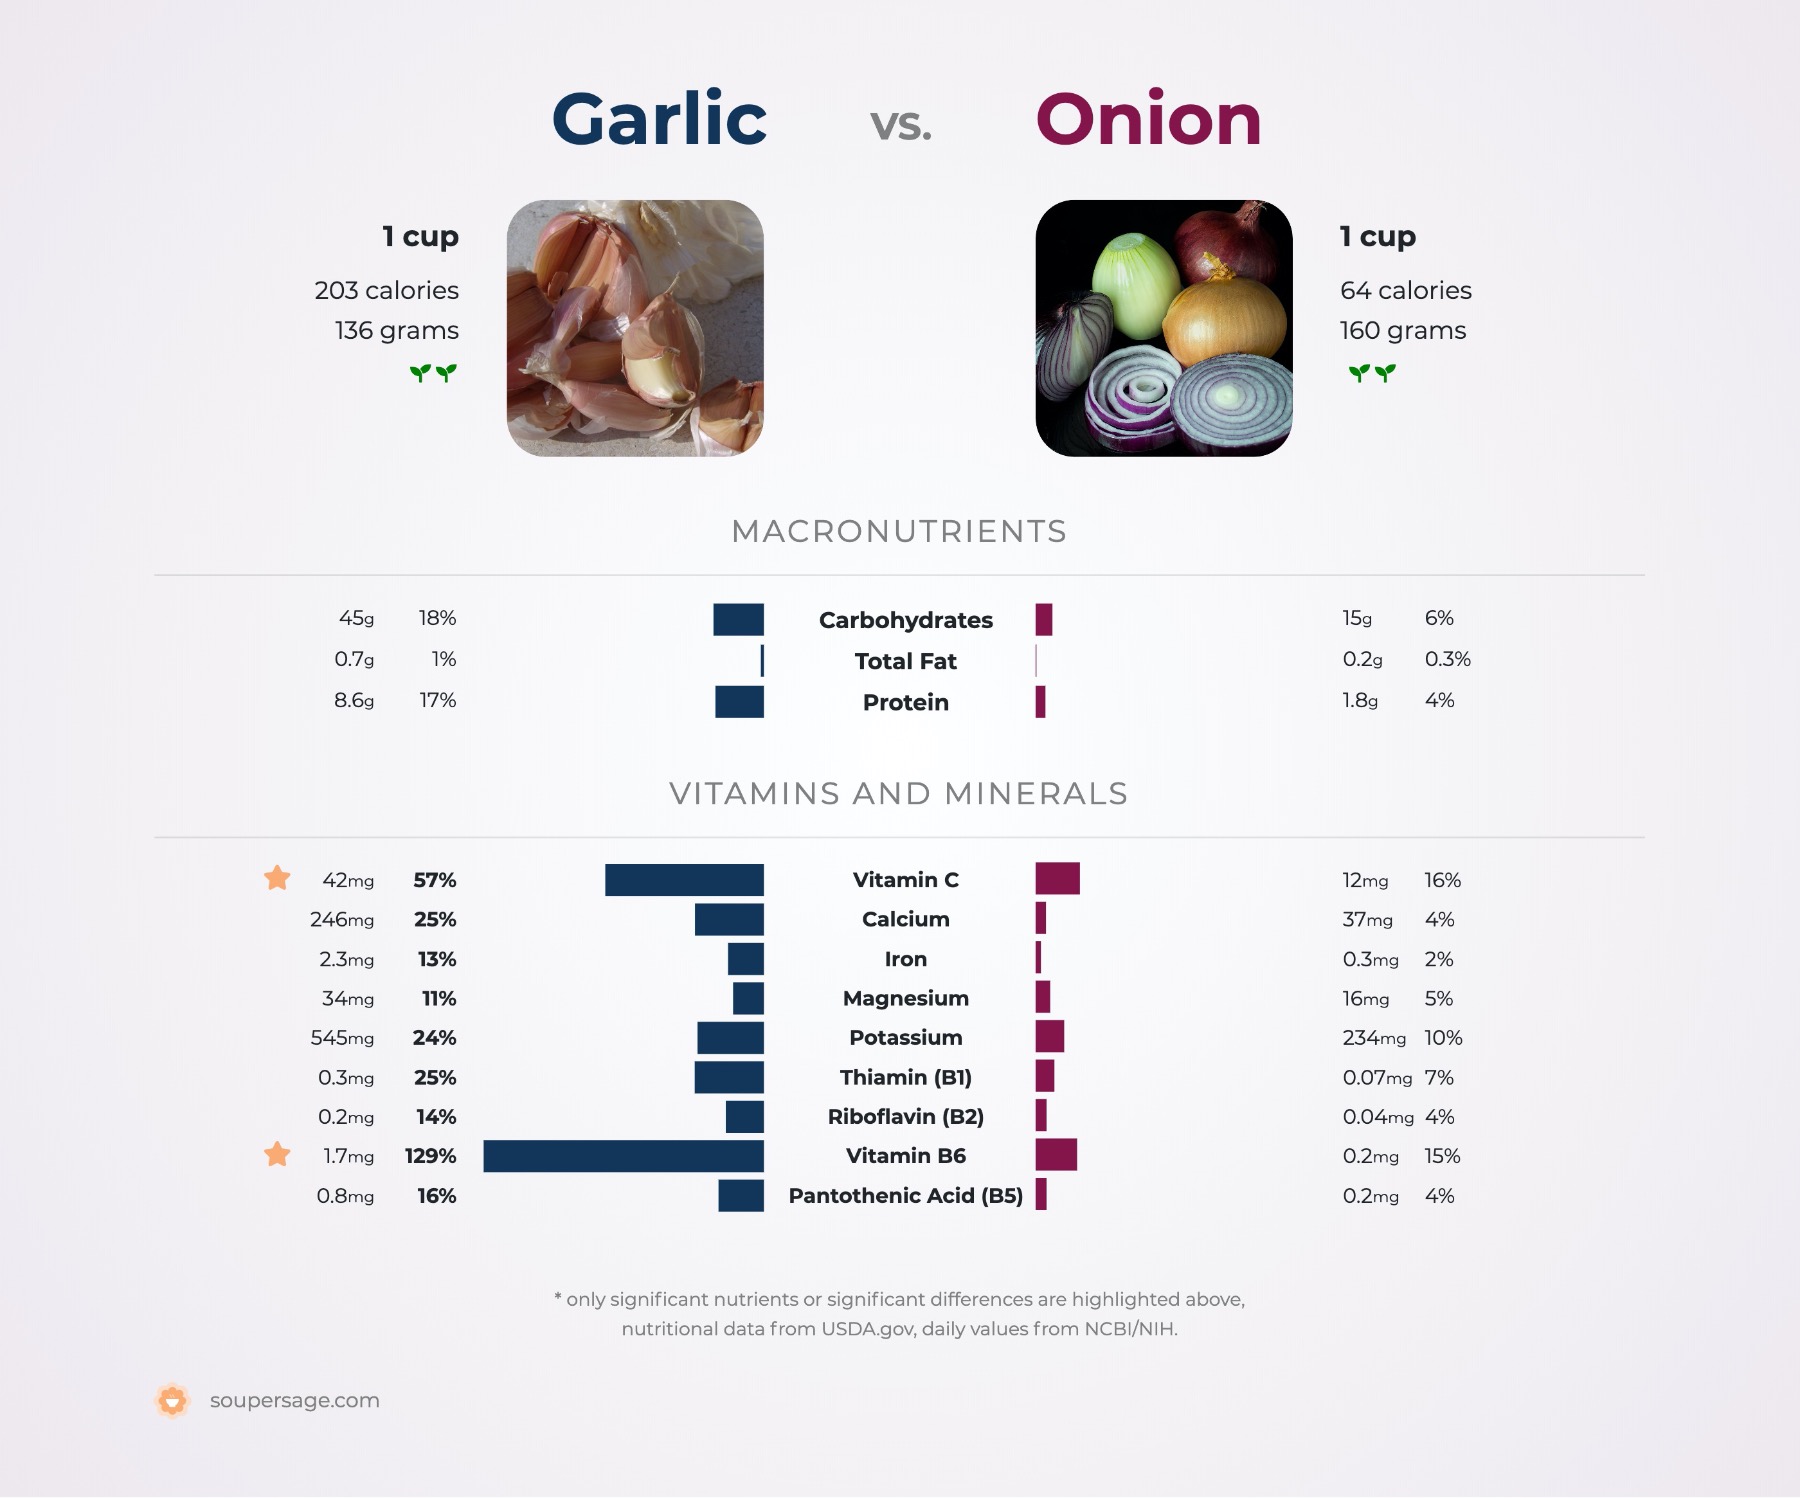 nutrition comparison of garlic vs. onion